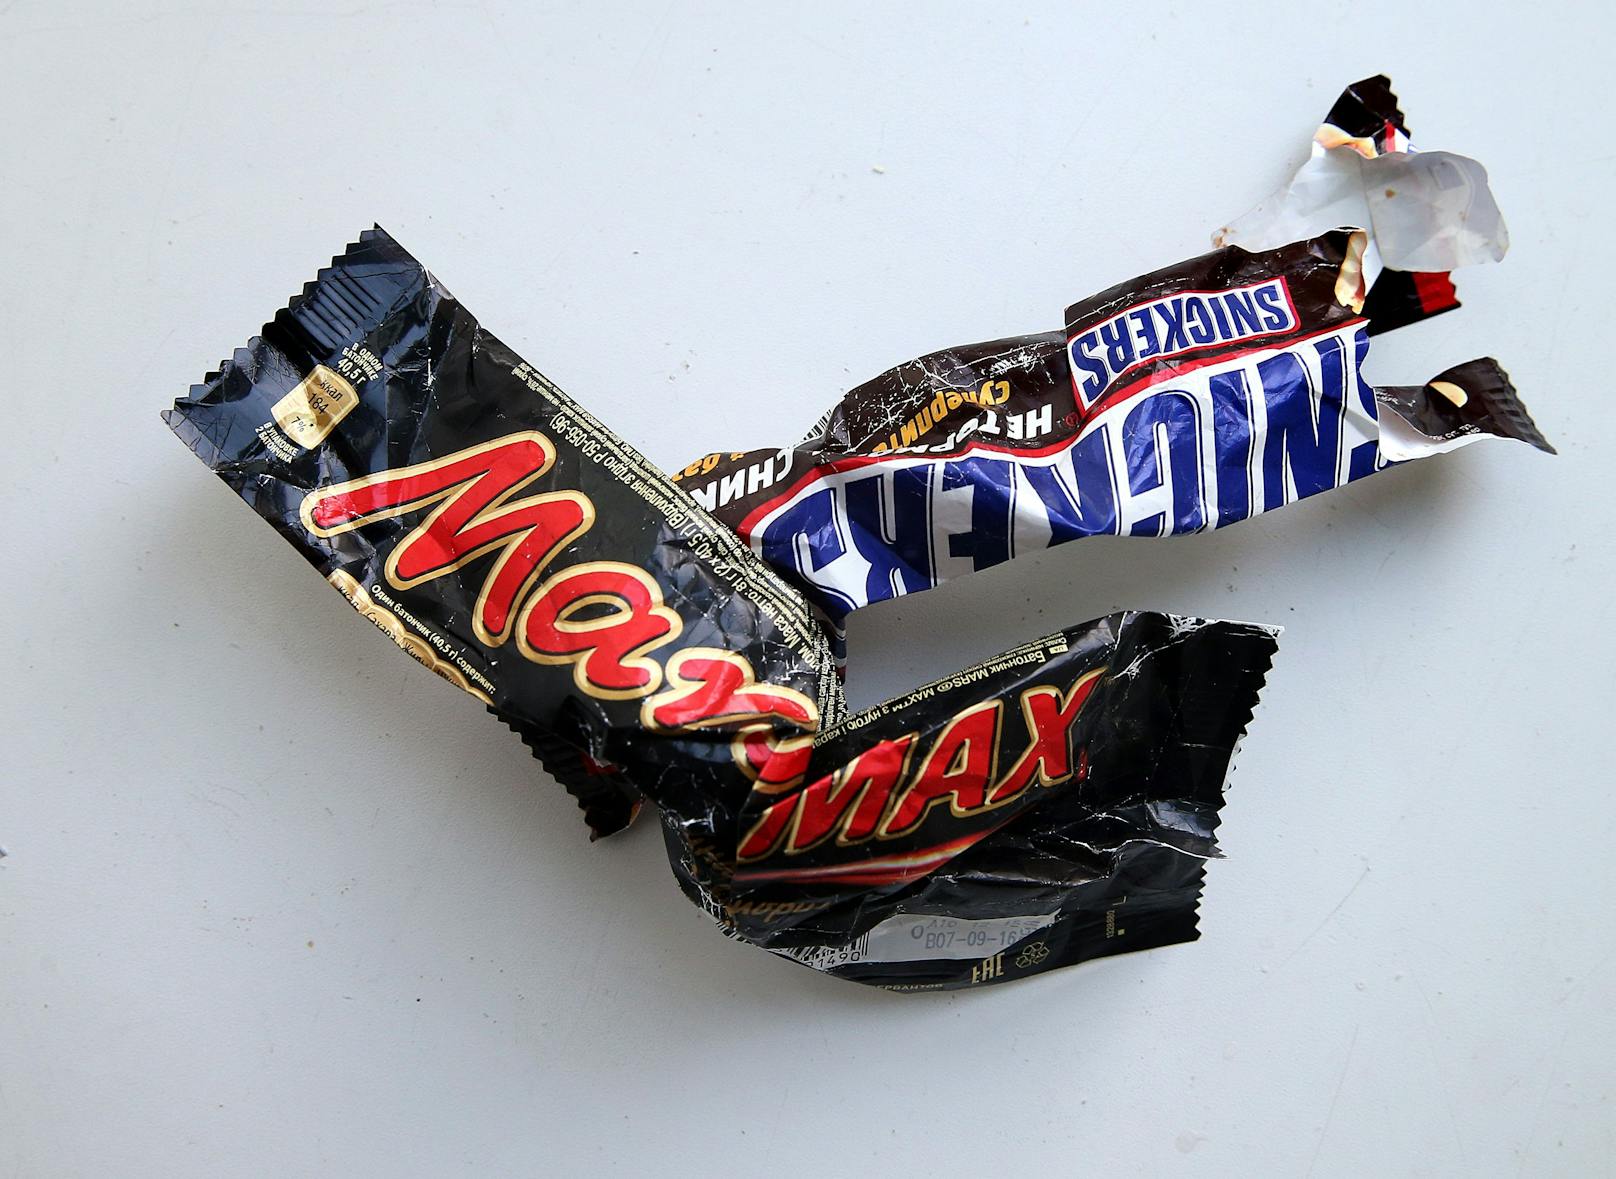 Weiter Streit – fliegen Mars & Snickers aus Regalen?